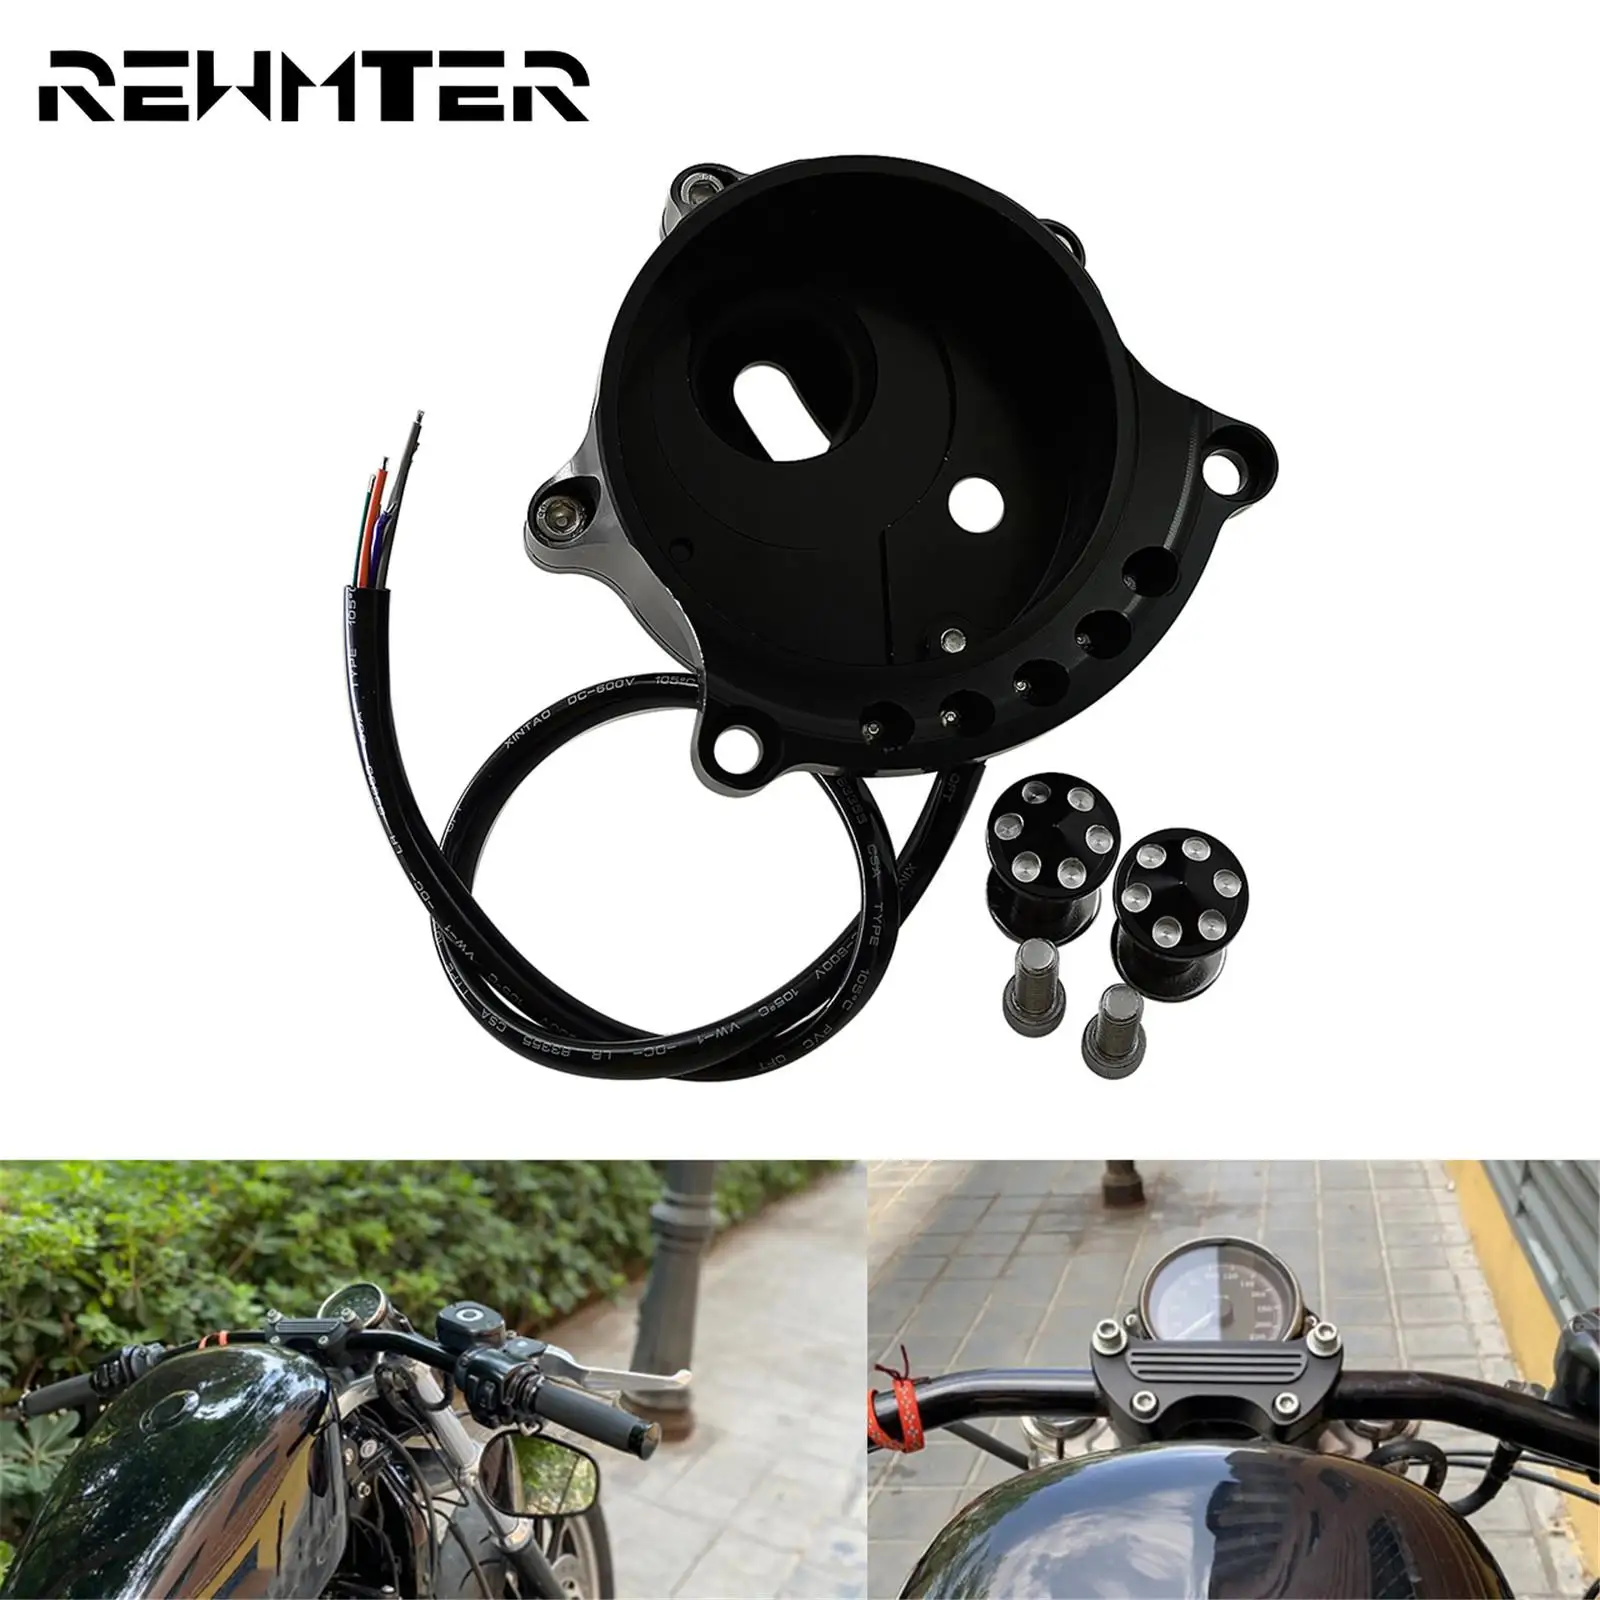 LED Fuel Gauge Tachometer For Harley Sportster Nightster Roadster 1200 883 